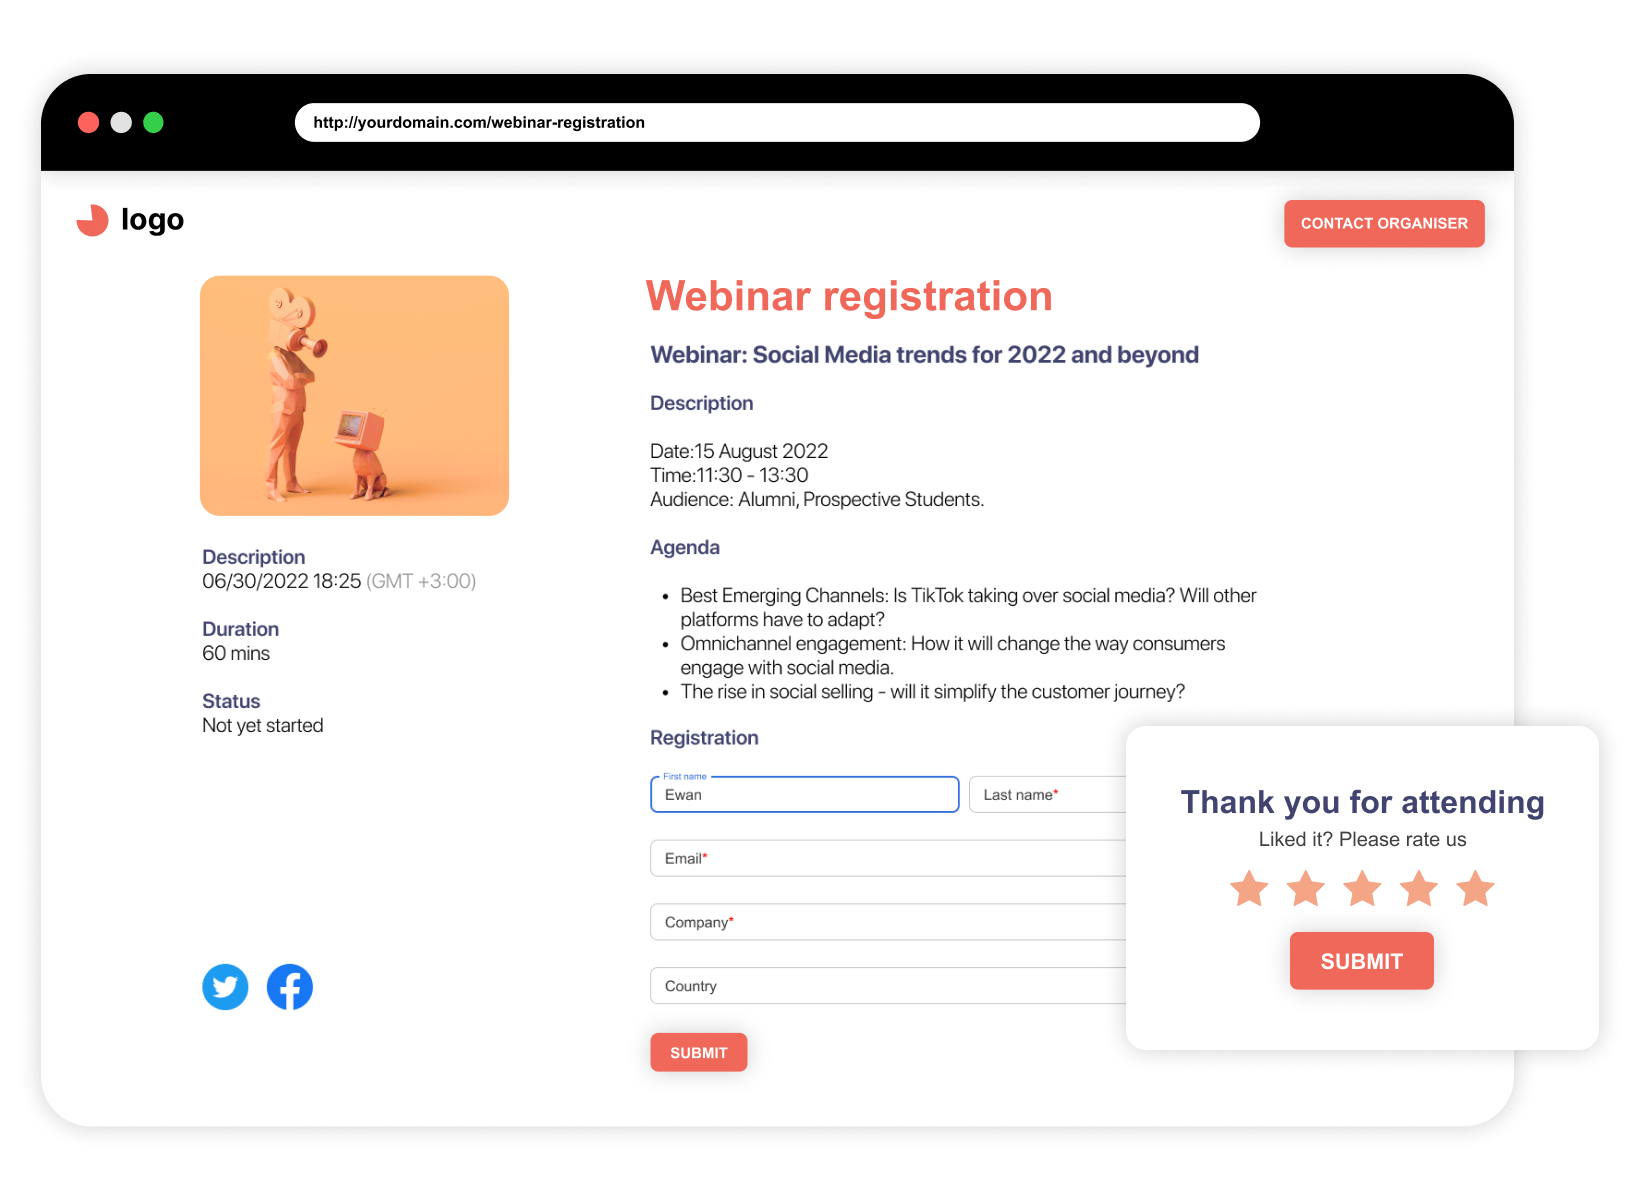 Digital Samba Software - Webinar registration landing page - Digital Samba